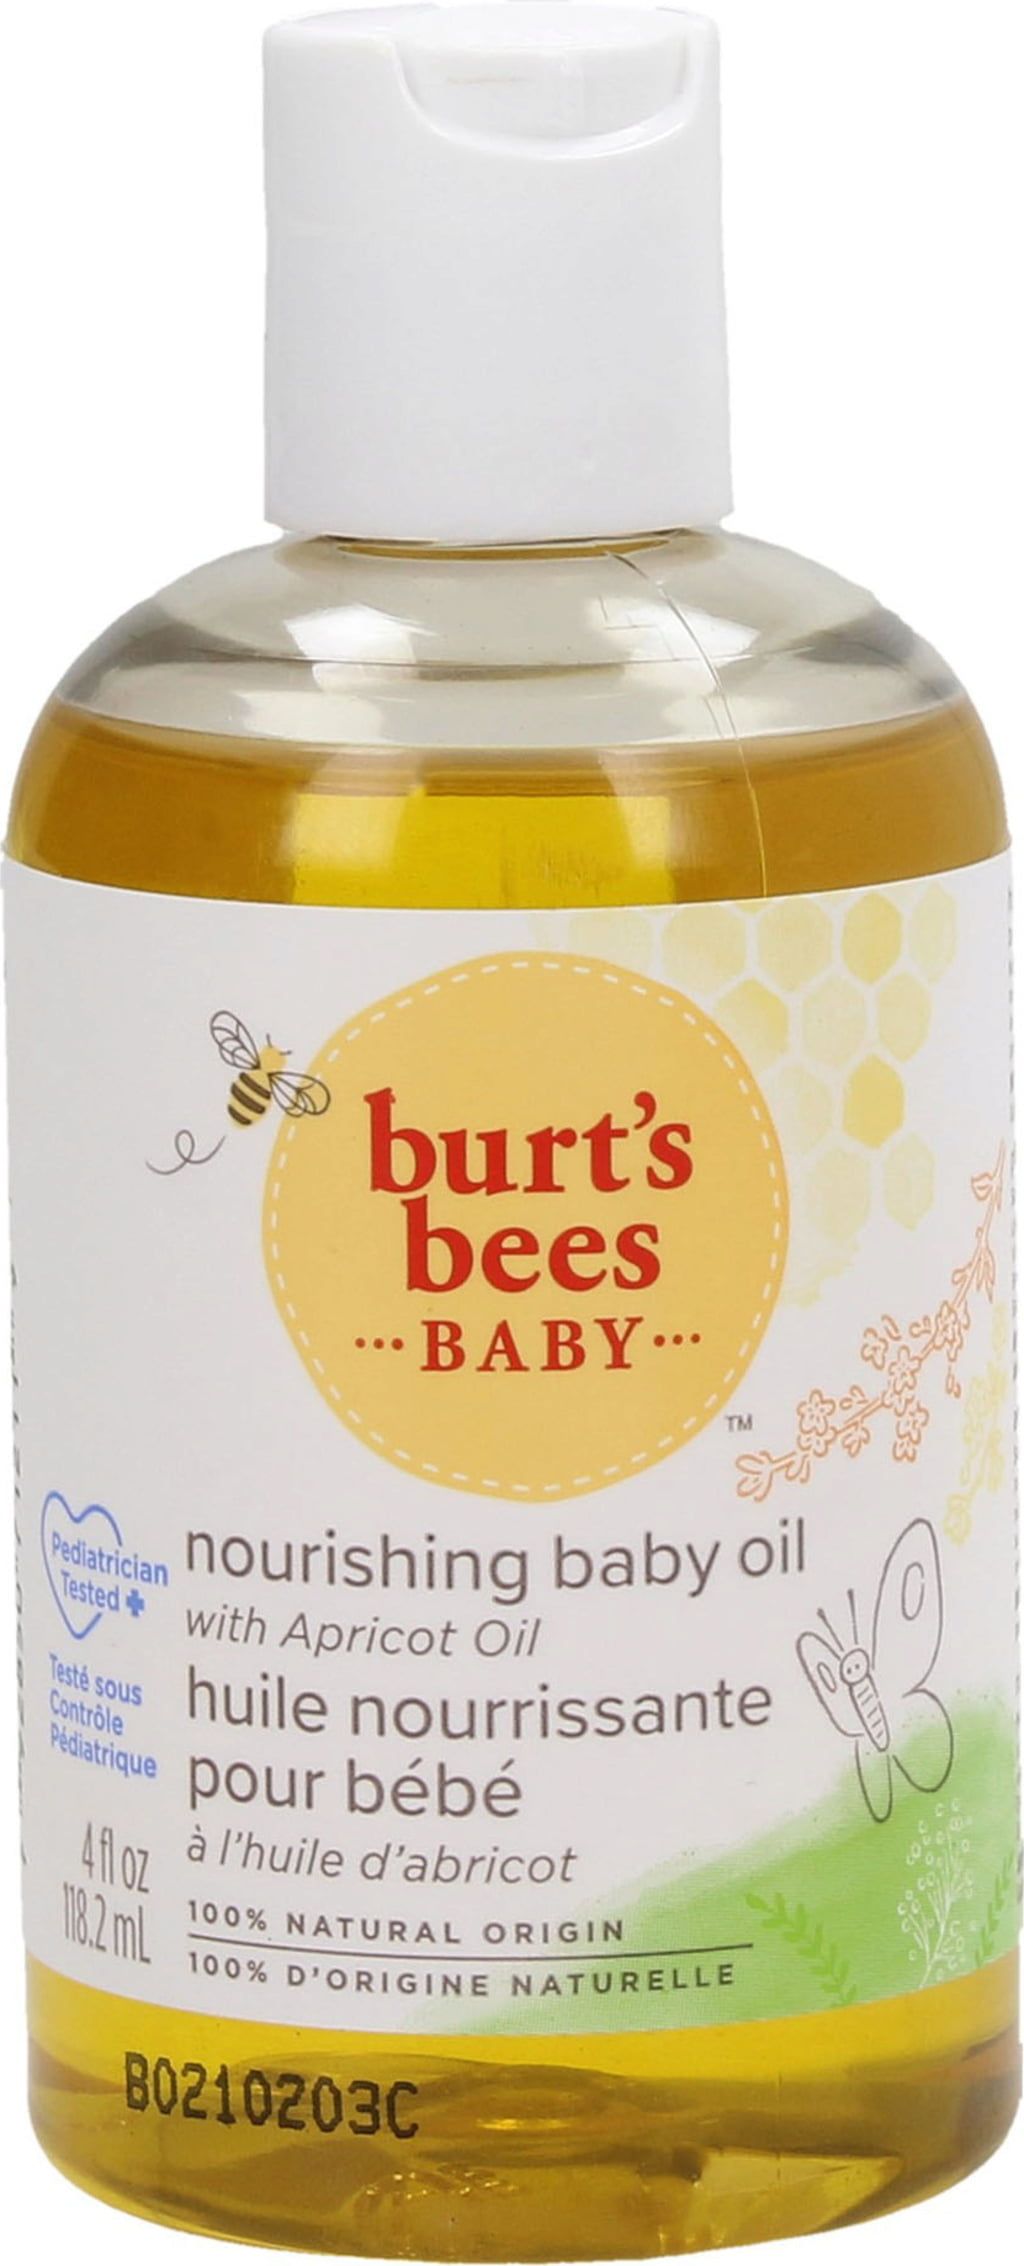 Burt's Bees Baby Bee Nourishing Baby Oil, 115 ml - Ecco Verde Online Shop